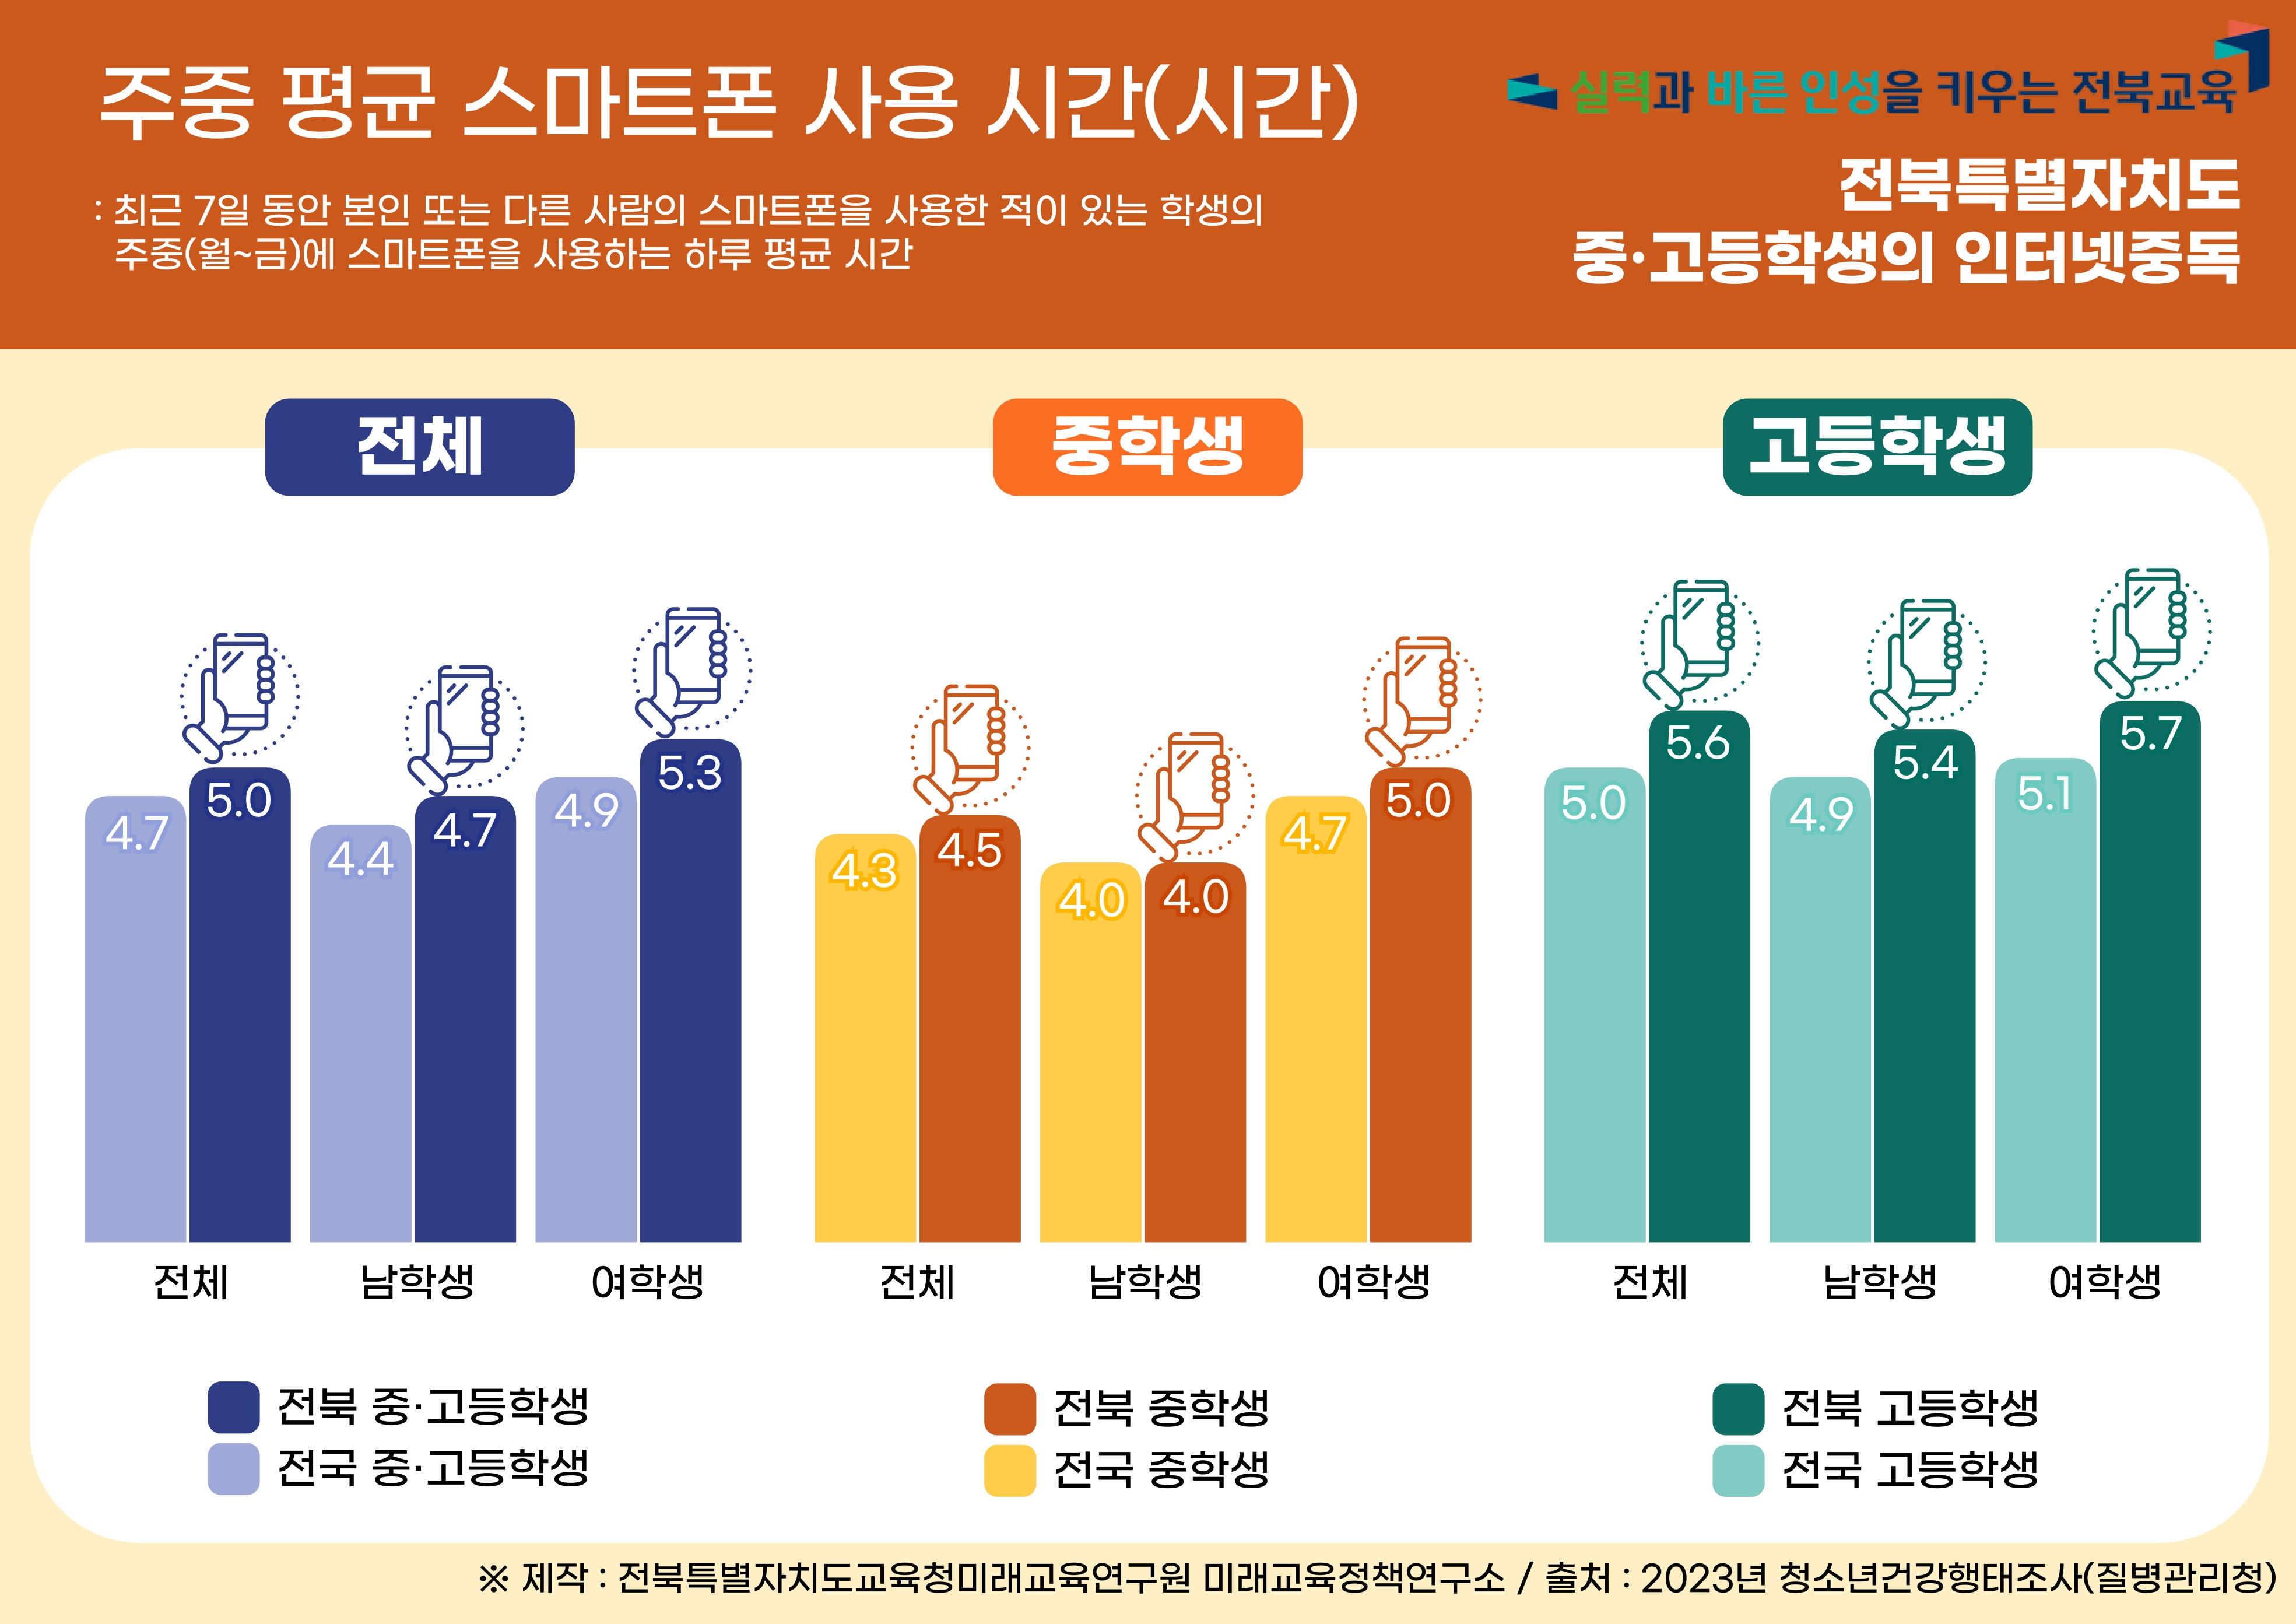 2023년 전북특별자치도 청소년 건강행태 :  인터넷중독